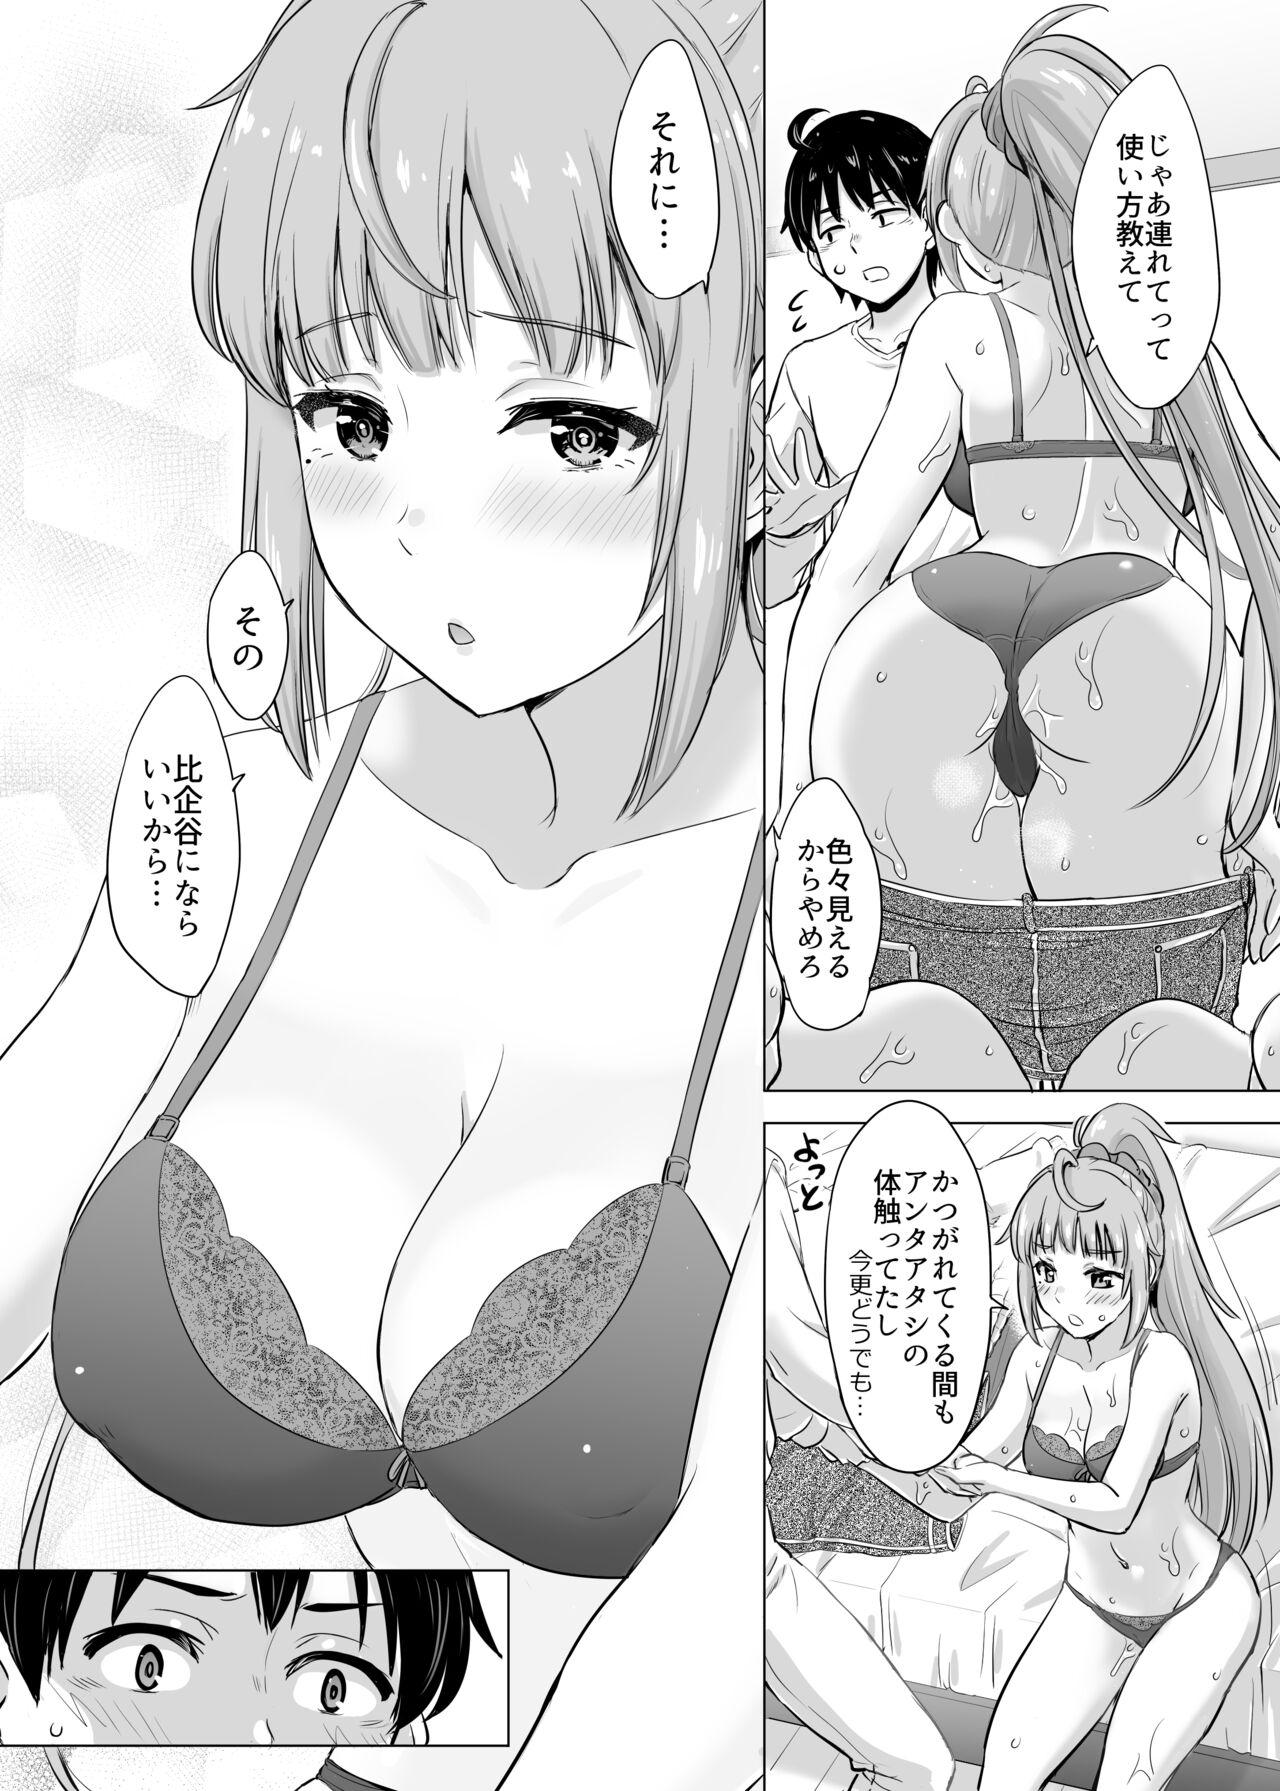 3way あーしさんサキサキ漫画 - Yahari ore no seishun love come wa machigatteiru Dad - Page 5